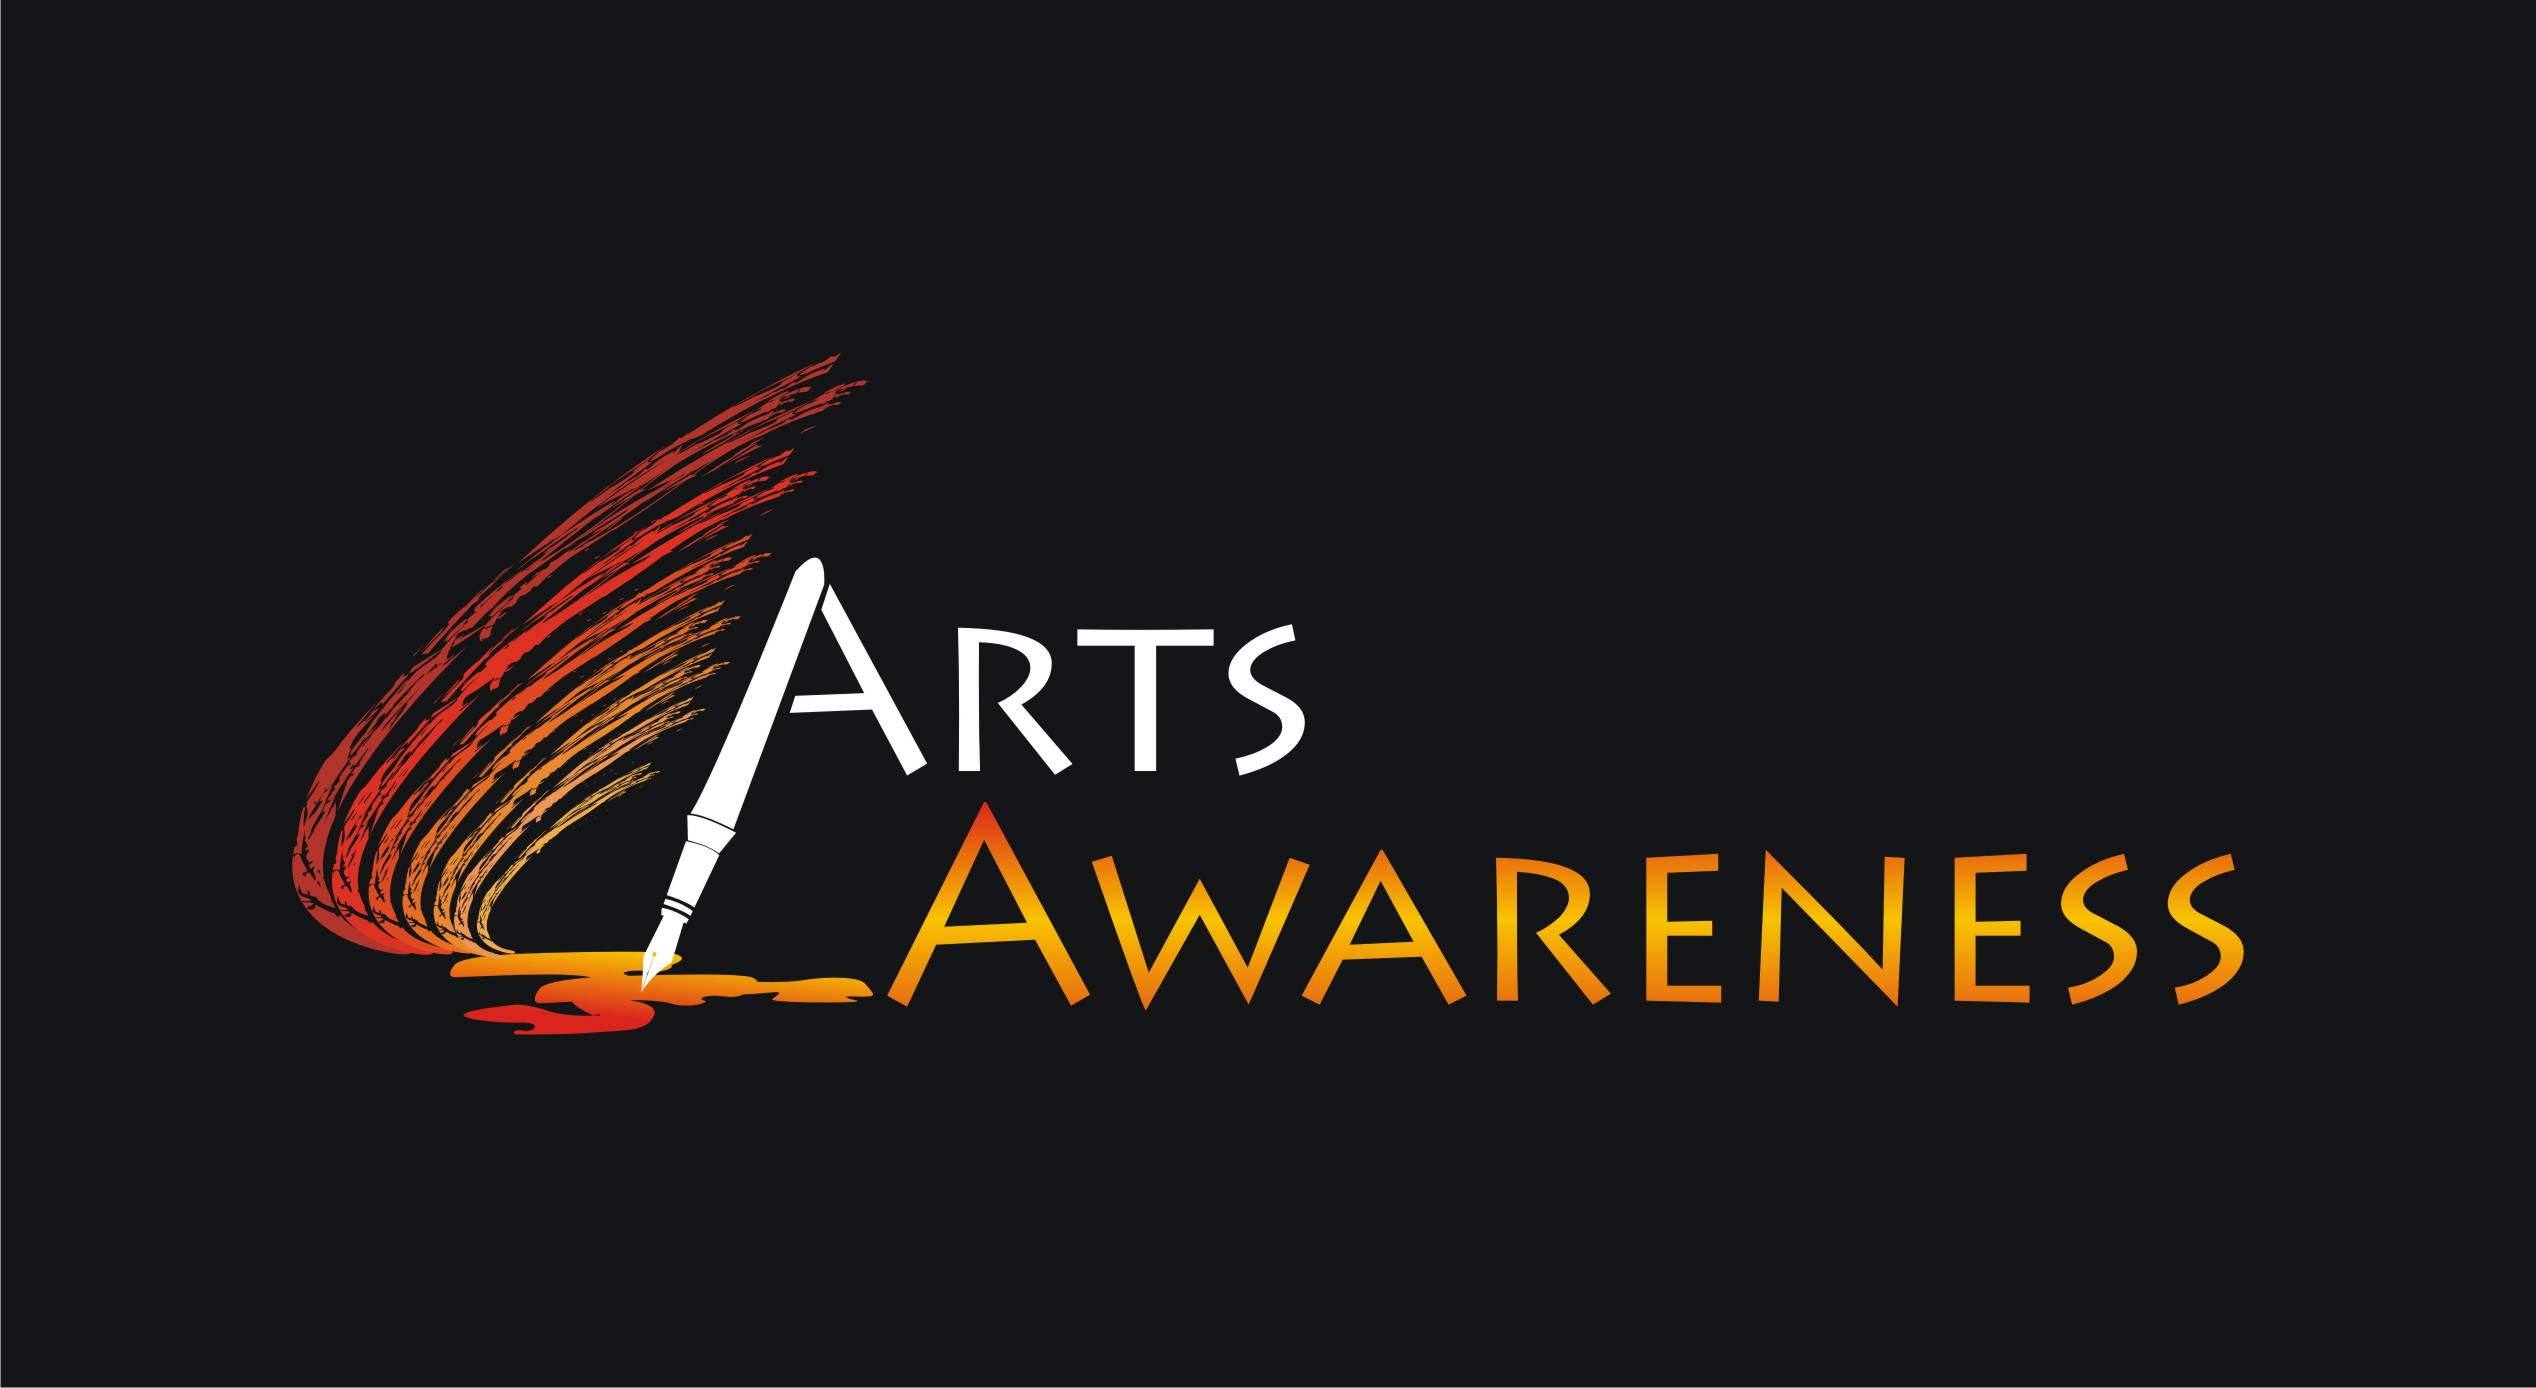 Arts Awareness